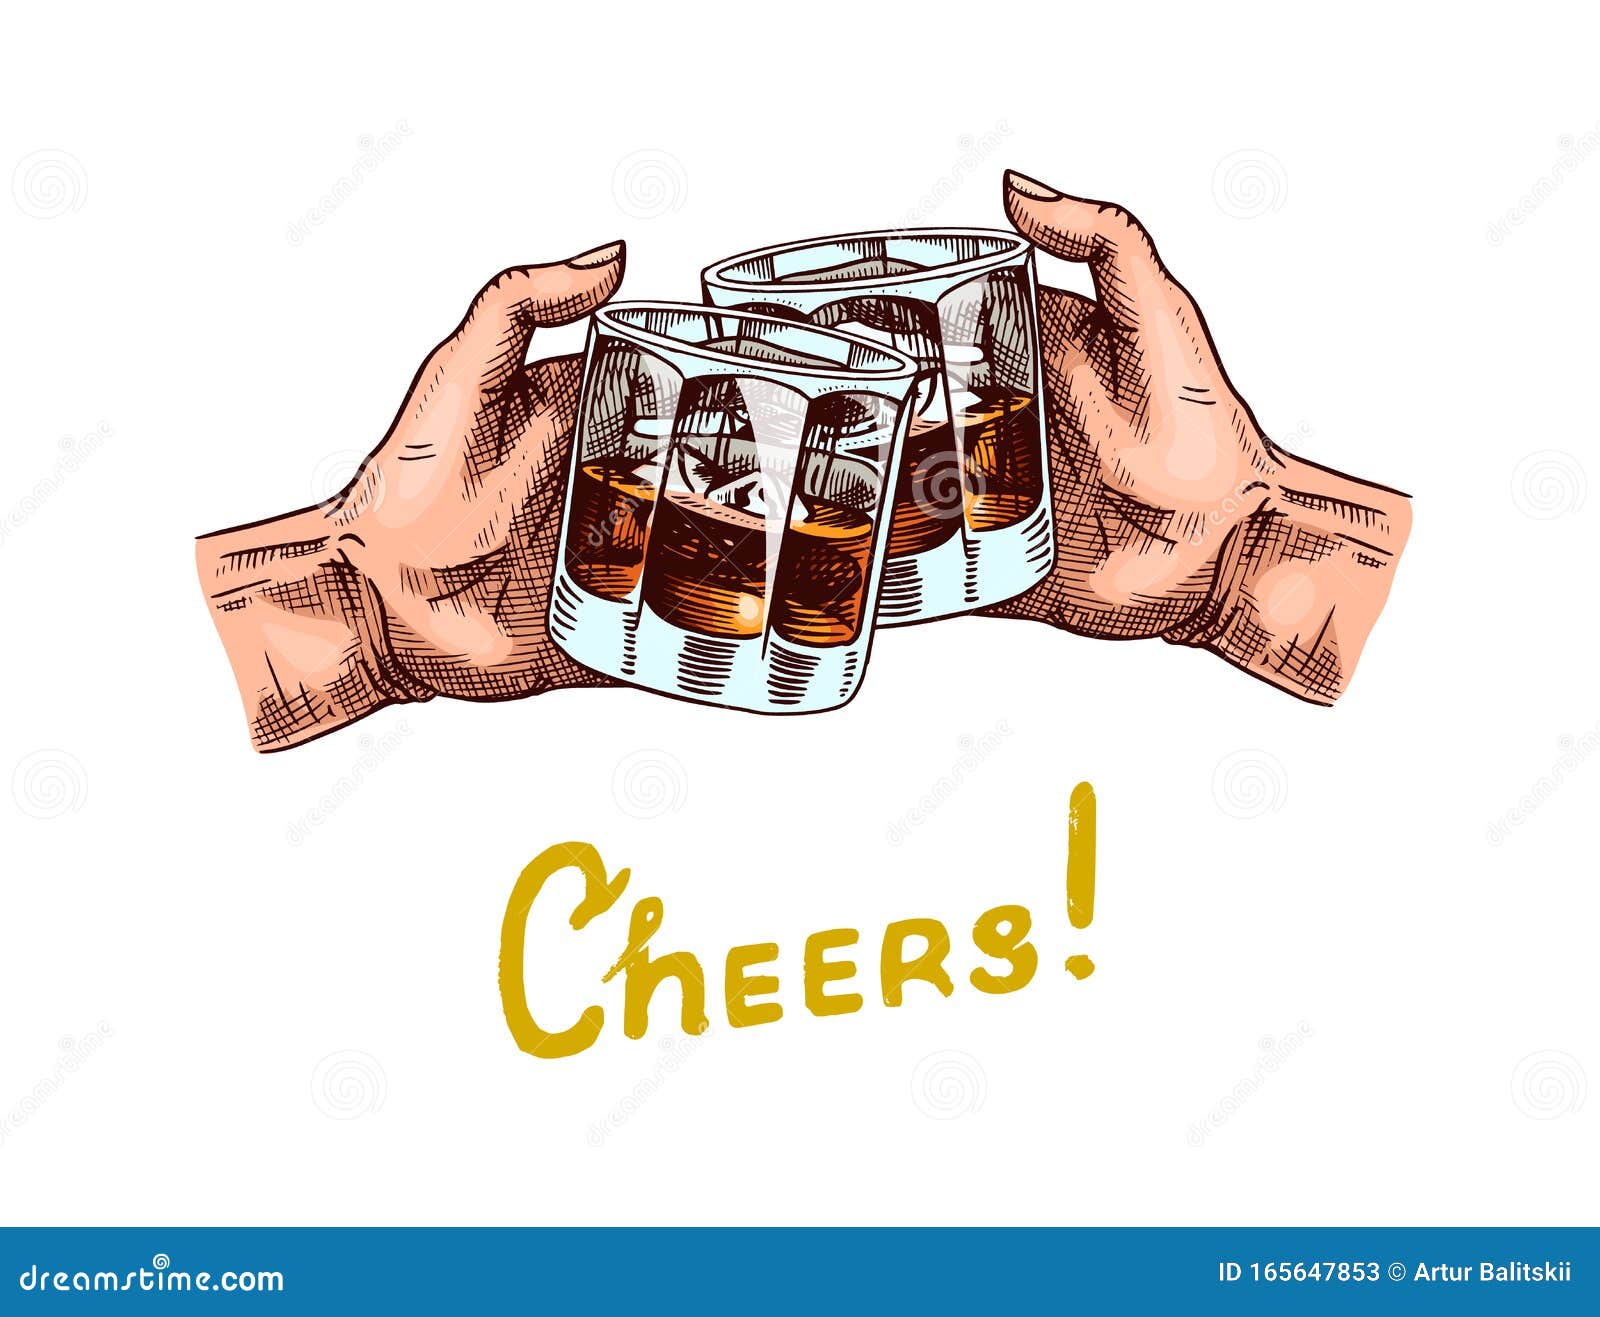 干杯 在手里举杯威士忌美国古董徽章带有书法元素的酒精标签向量例证 插画包括有可笑 成人